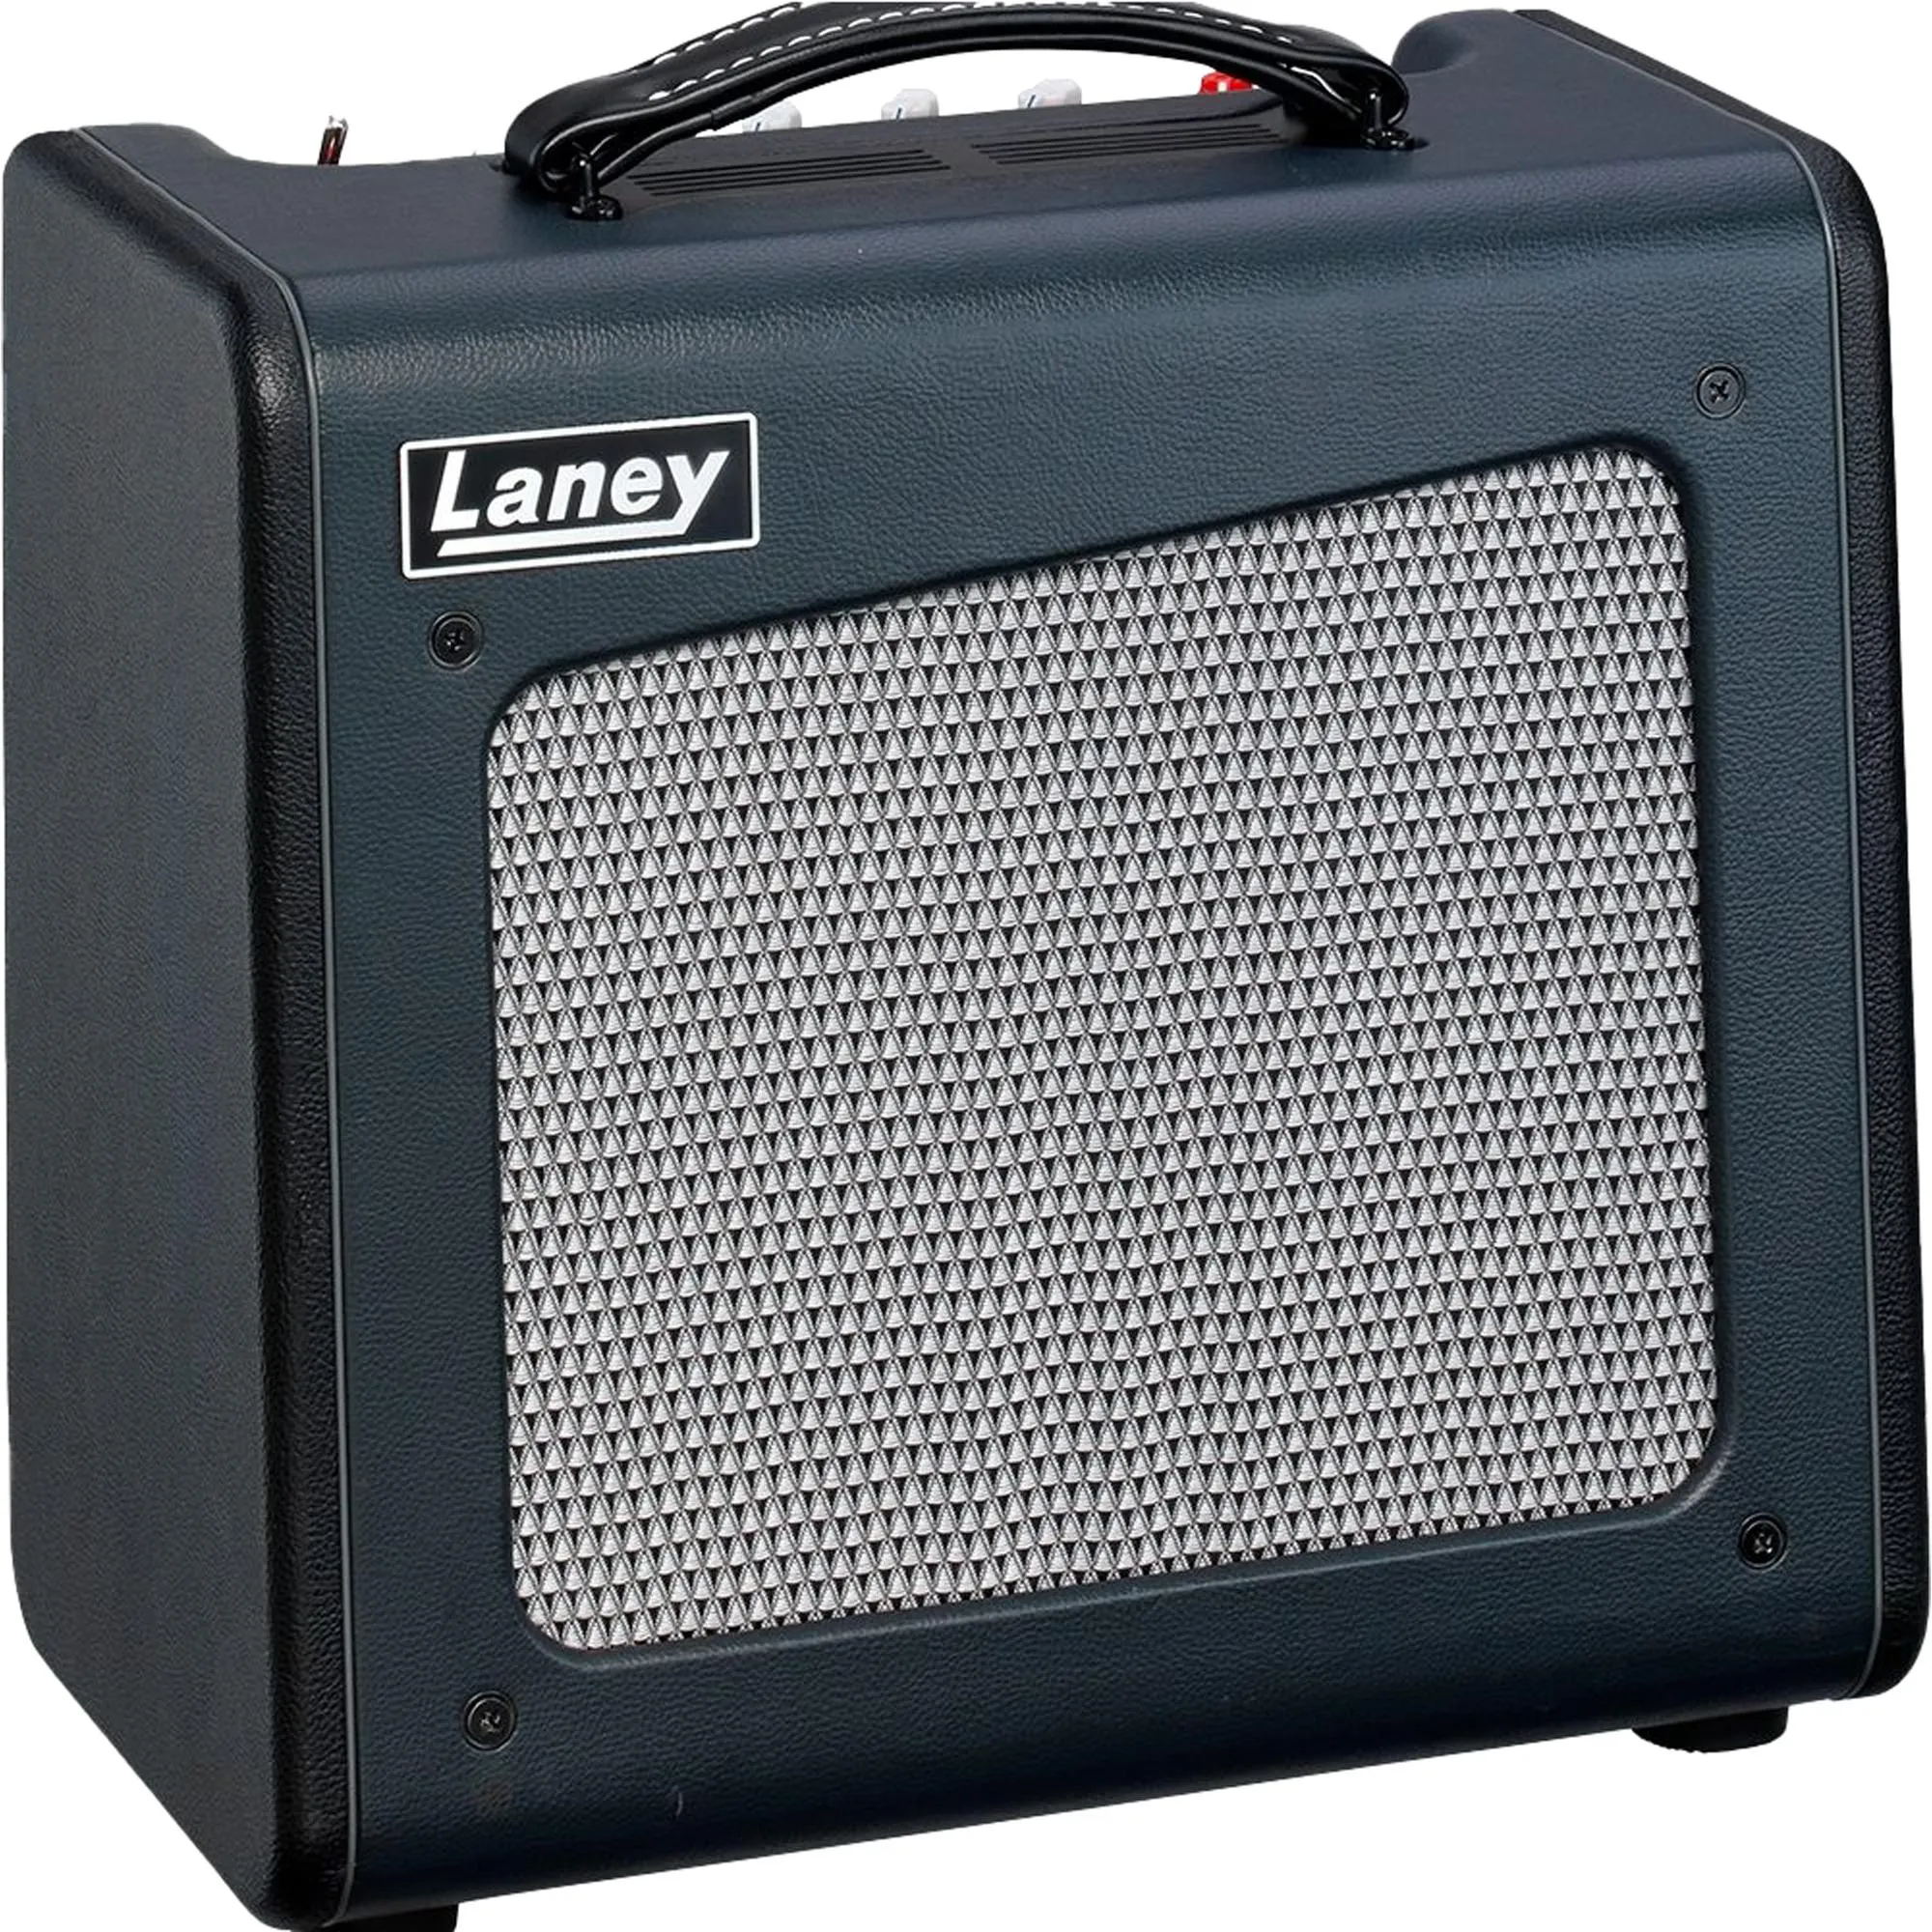 Amplificador Para Guitarra Laney Cubesuper10 Preto por 5.161,00 à vista no boleto/pix ou parcele em até 12x sem juros. Compre na loja Mundomax!